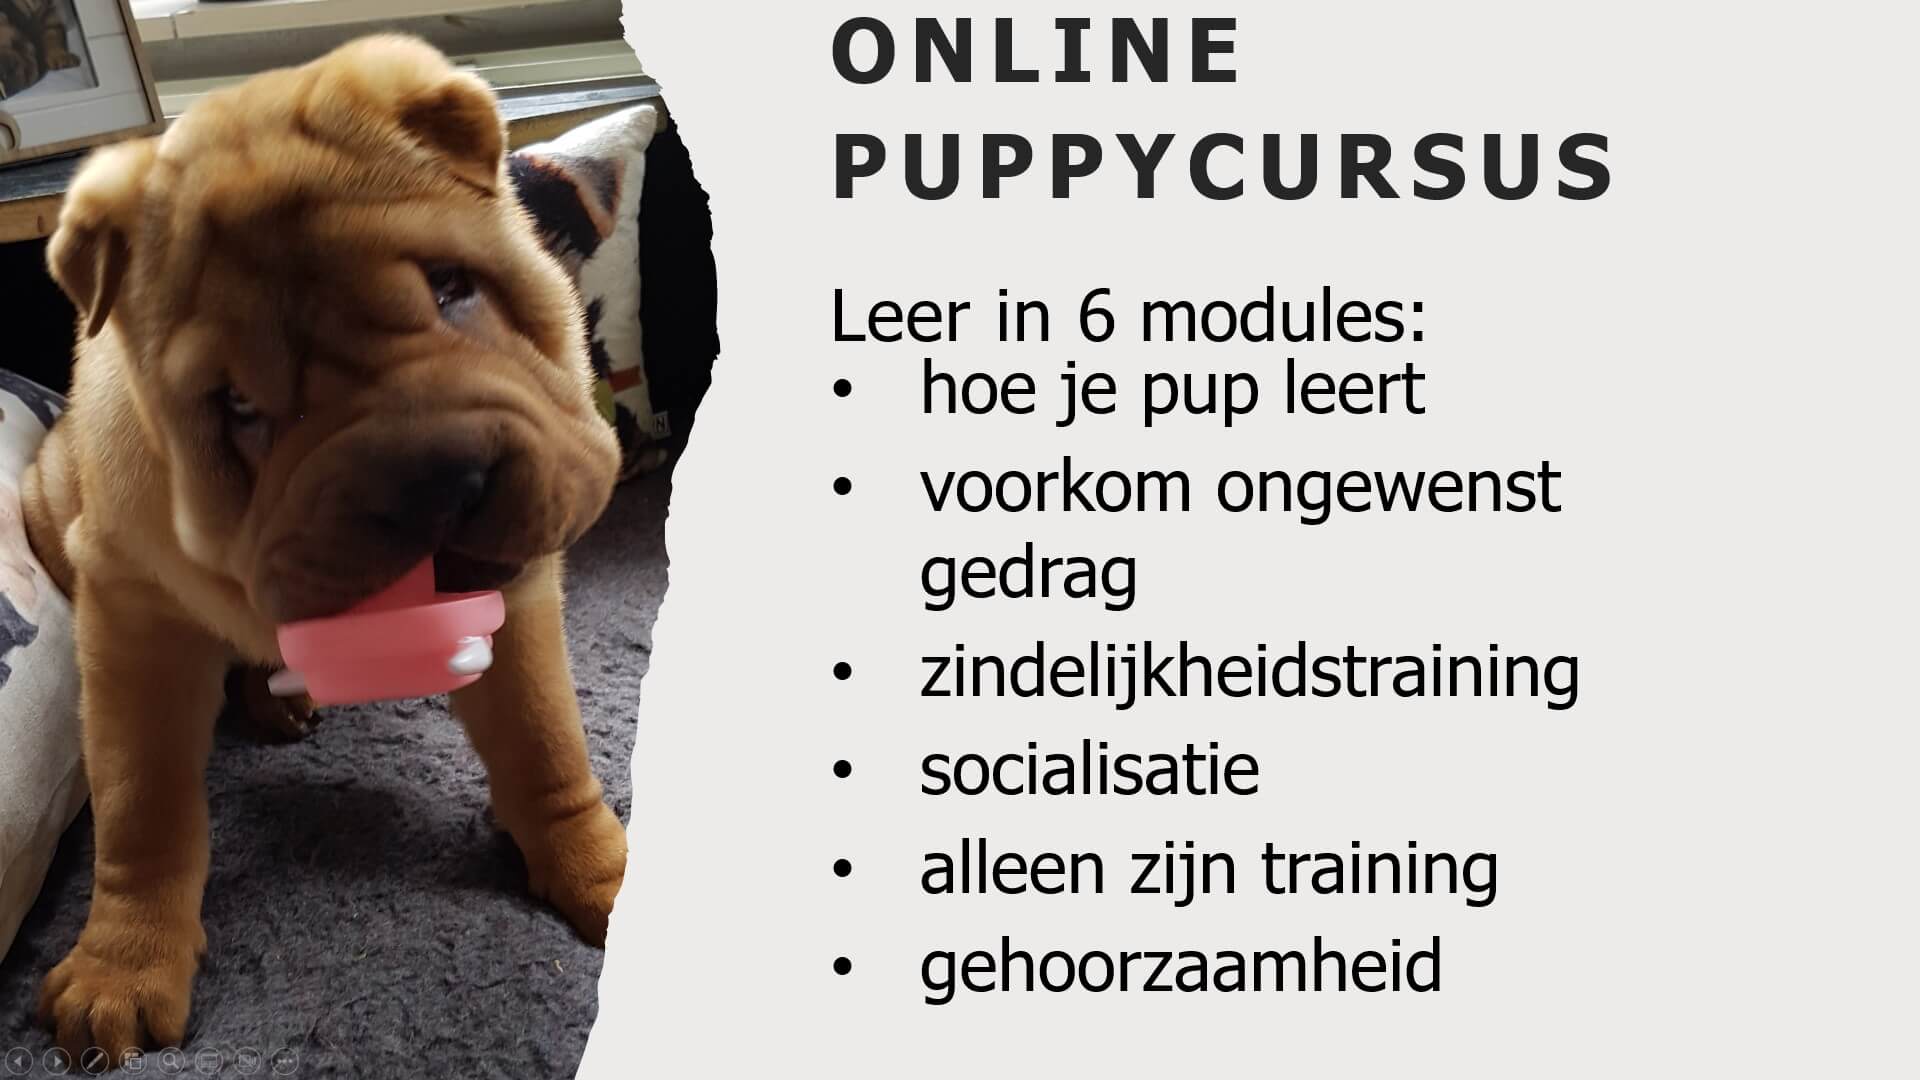 Online puppycursus